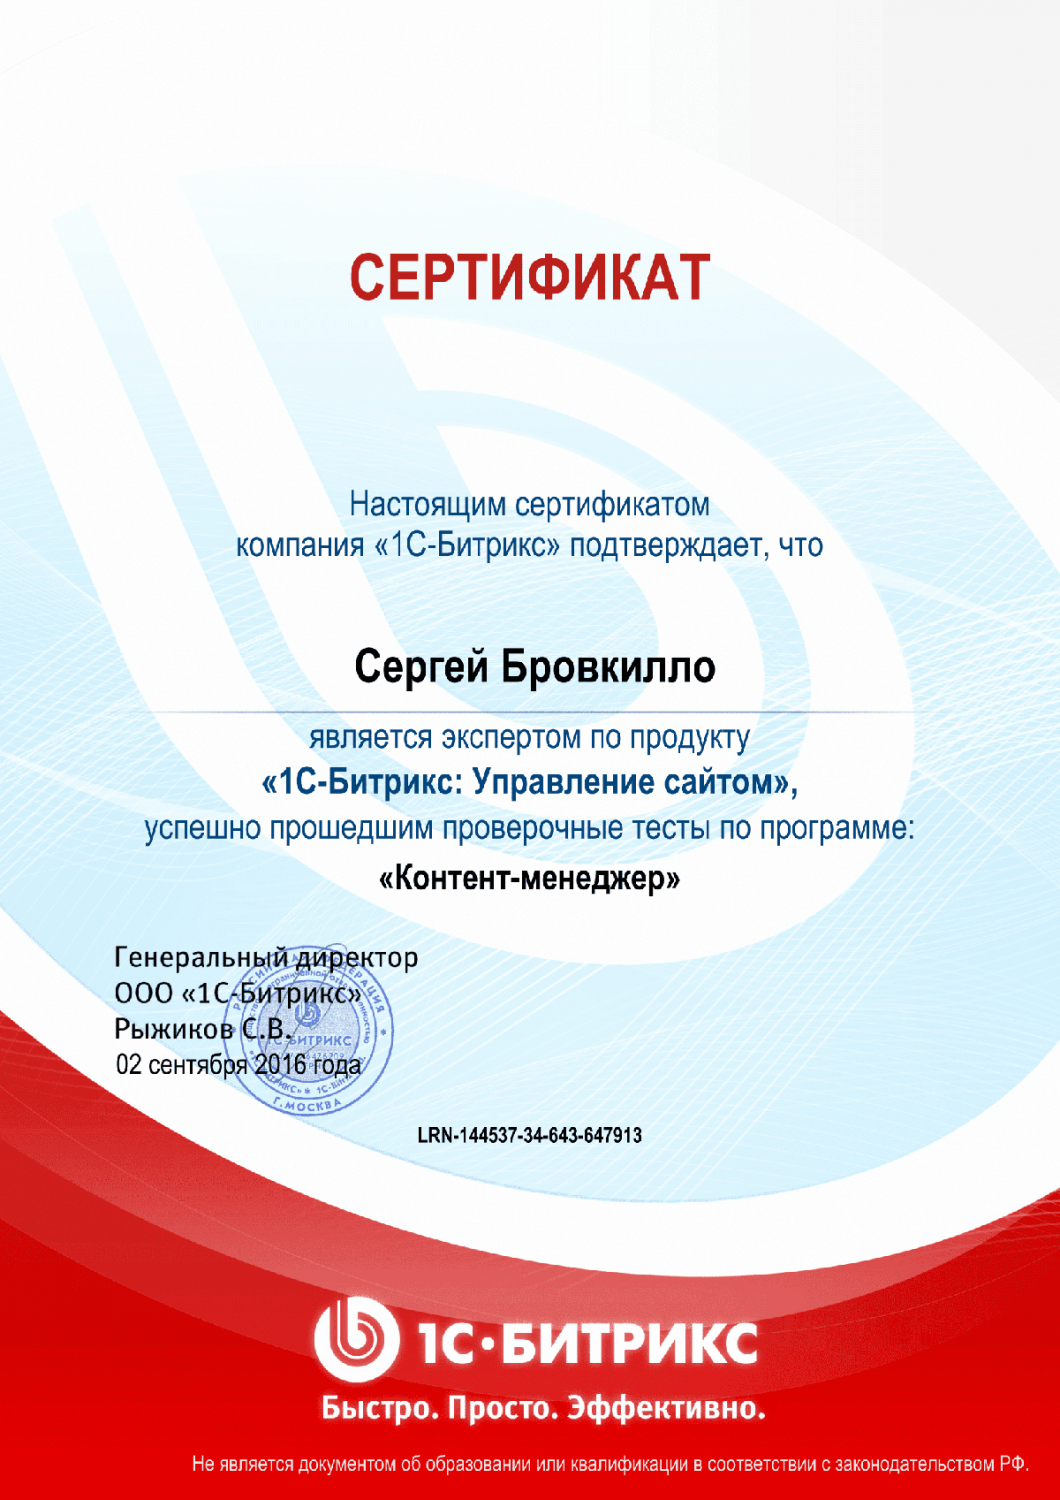 Сертификат эксперта по программе "Контент-менеджер"" в Петрозаводска